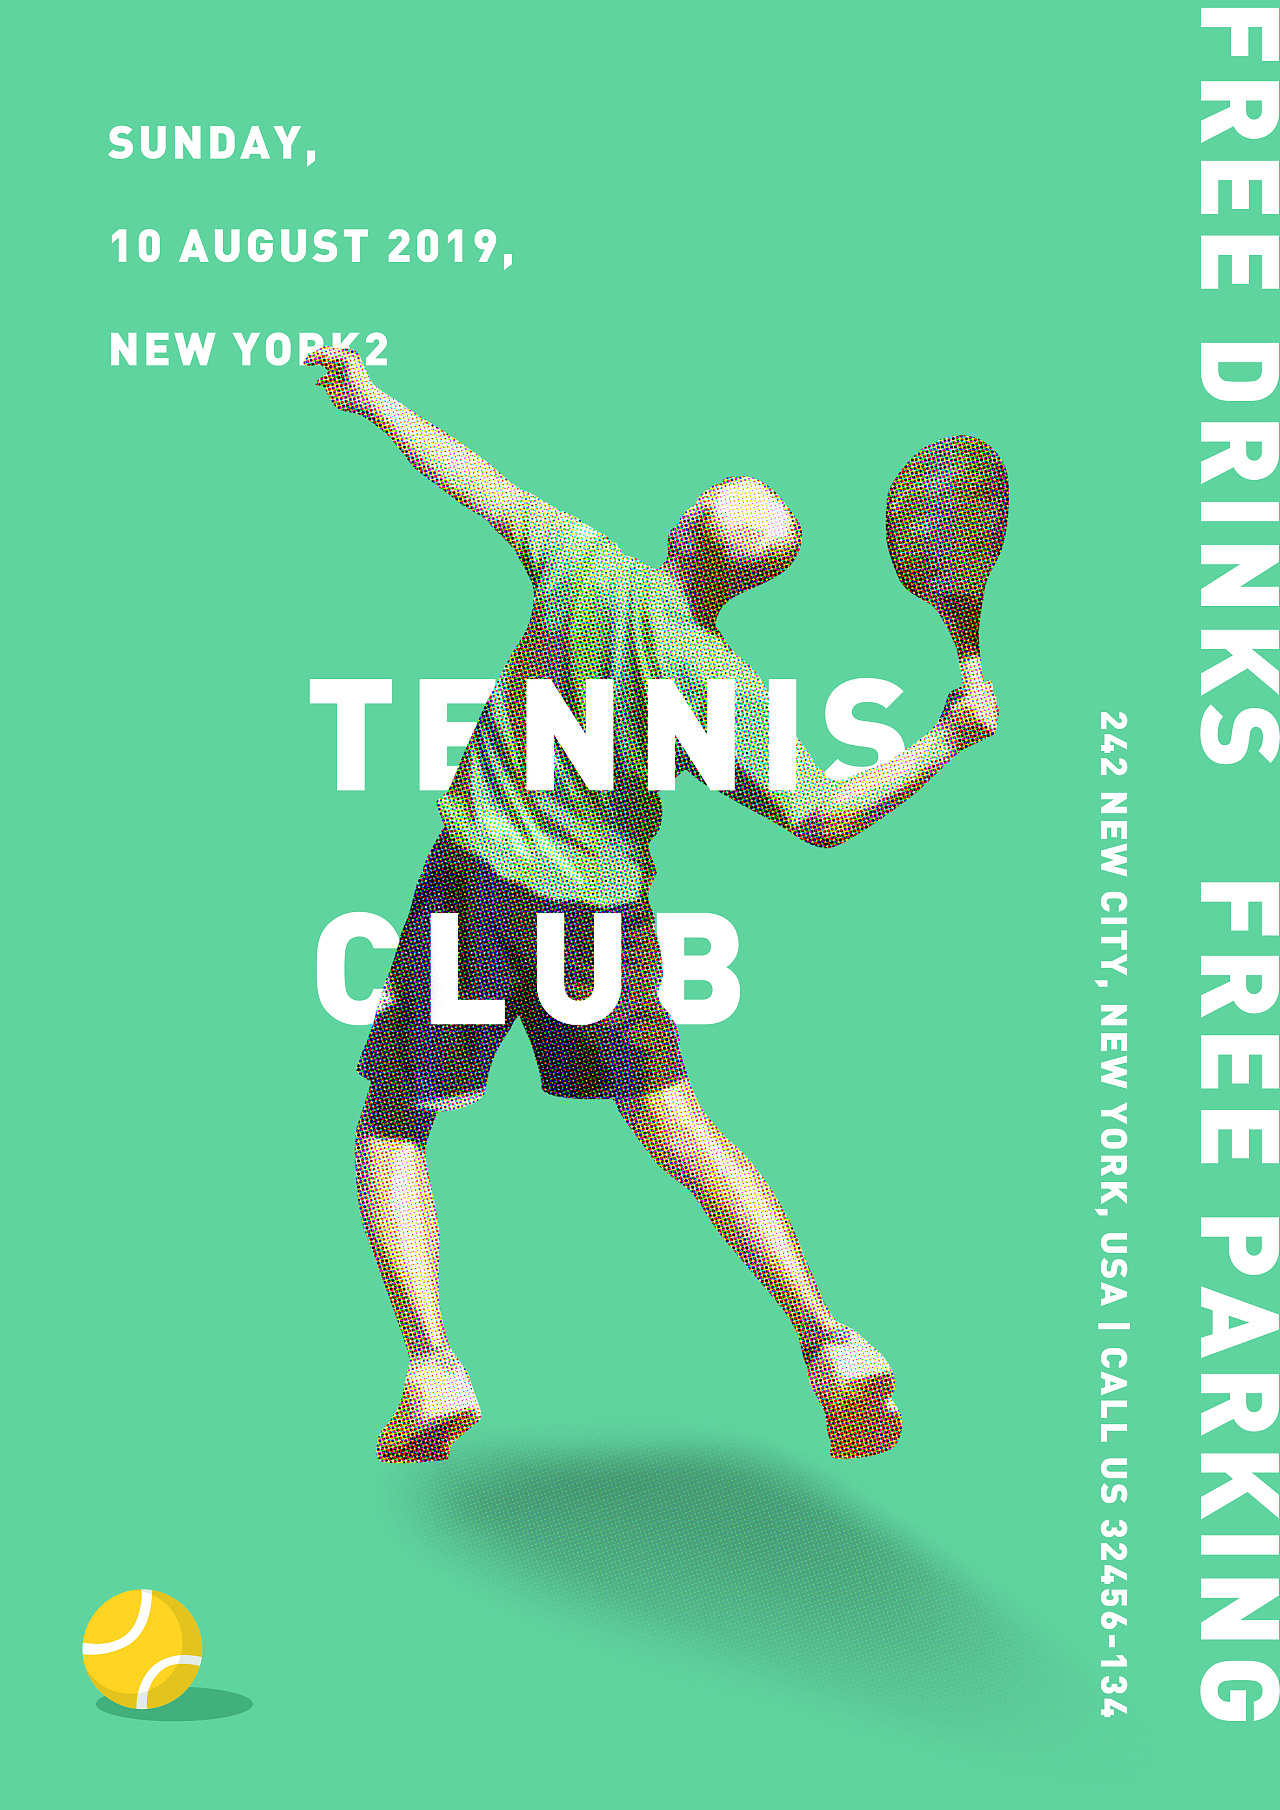 网球比赛海报图片大全图片